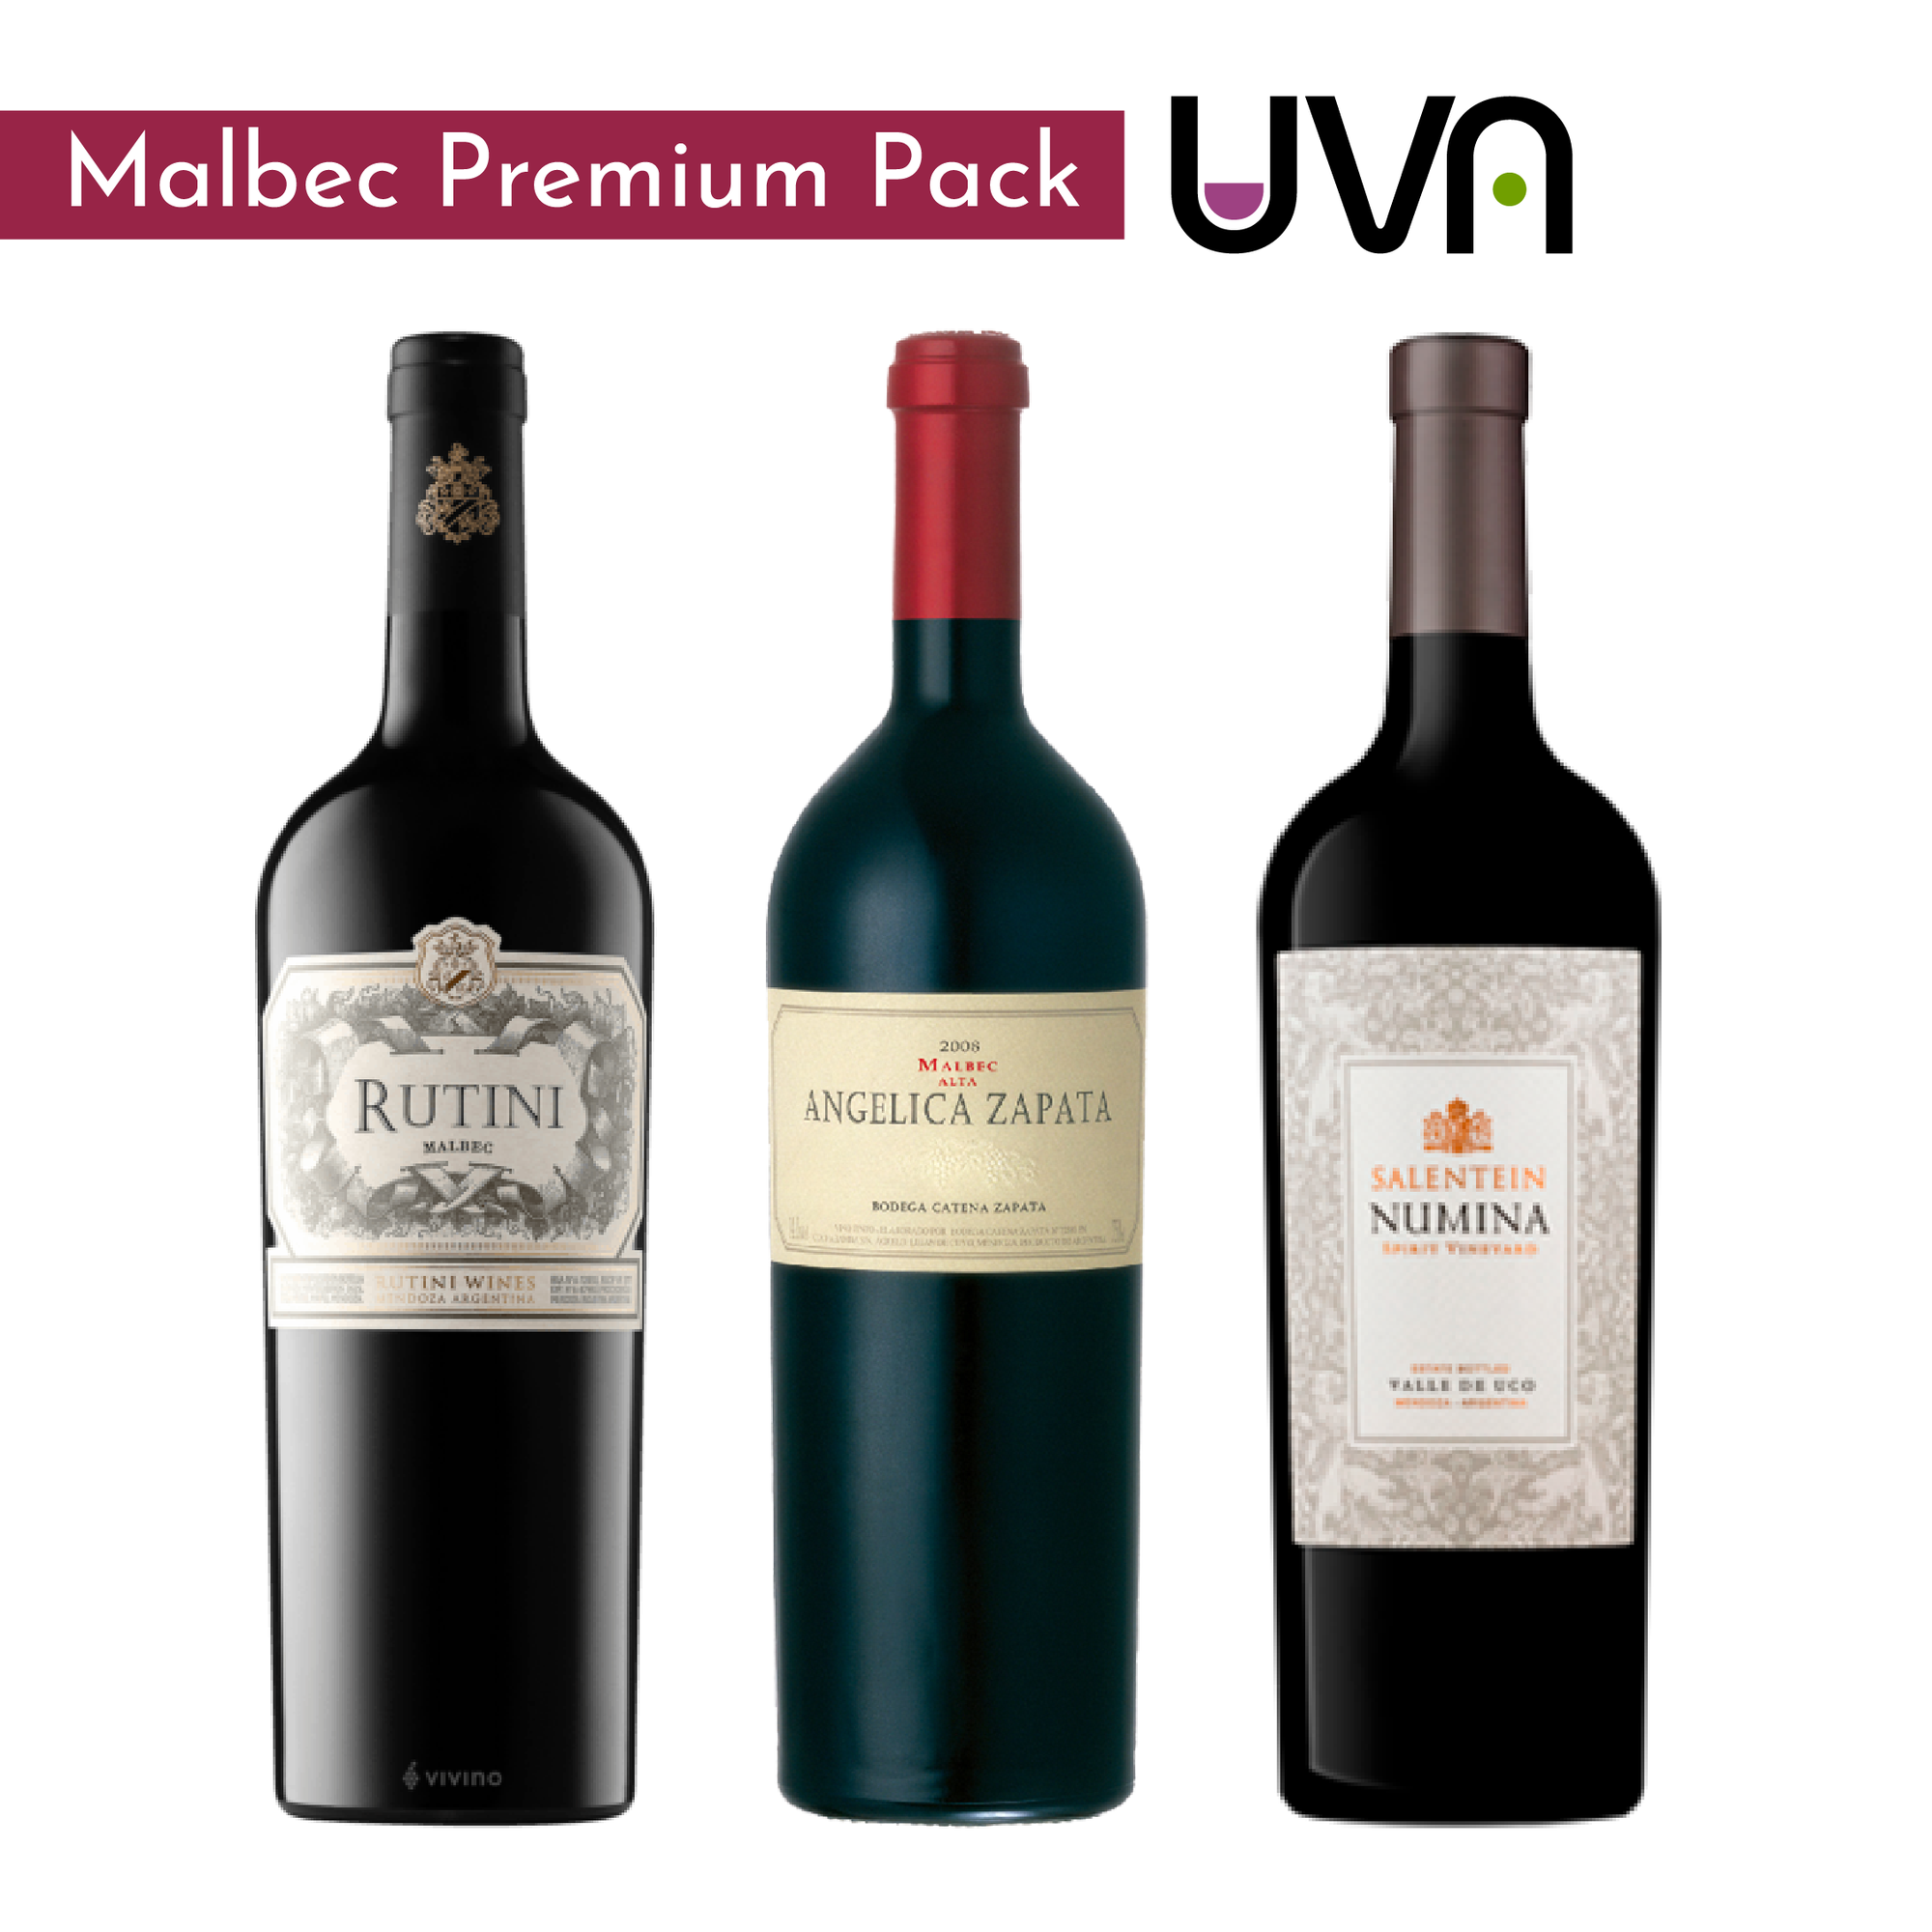 Malbec Premium Pack